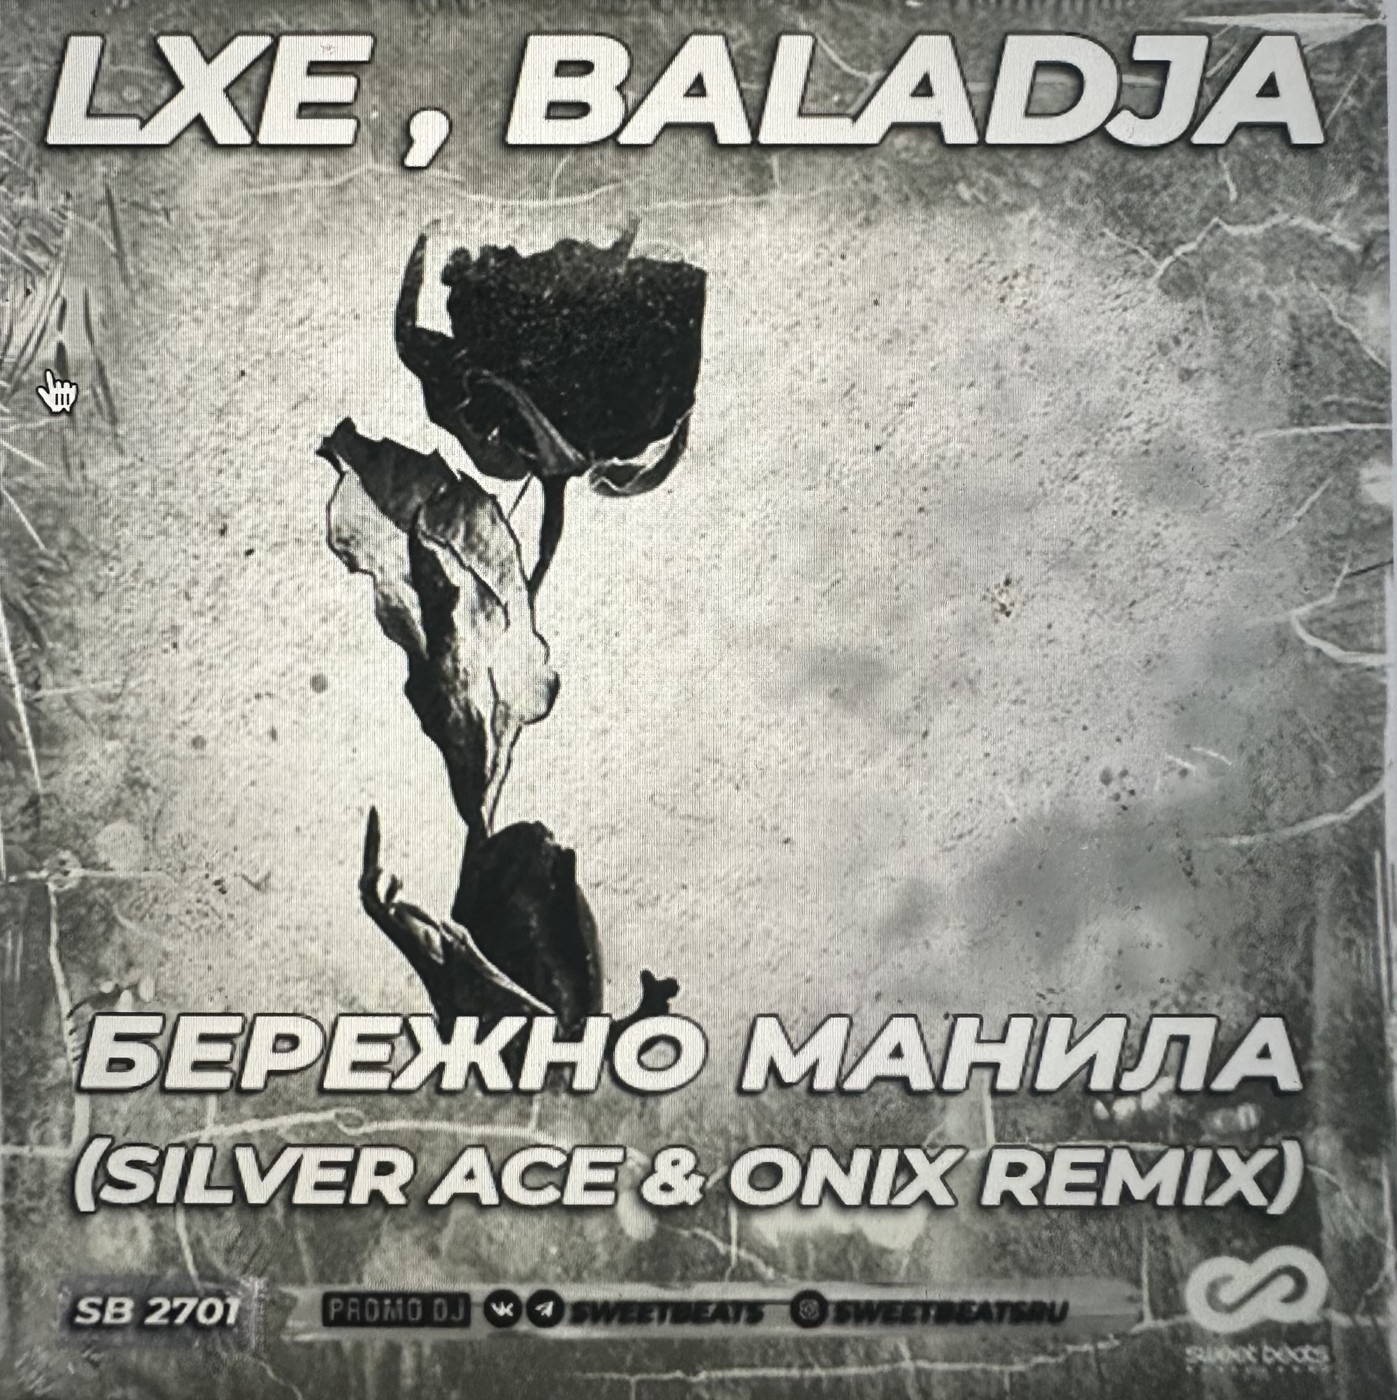 Песня бережно манило. Бережно Манила. Baladja. LXE Baladja. Silver Ace Remix.